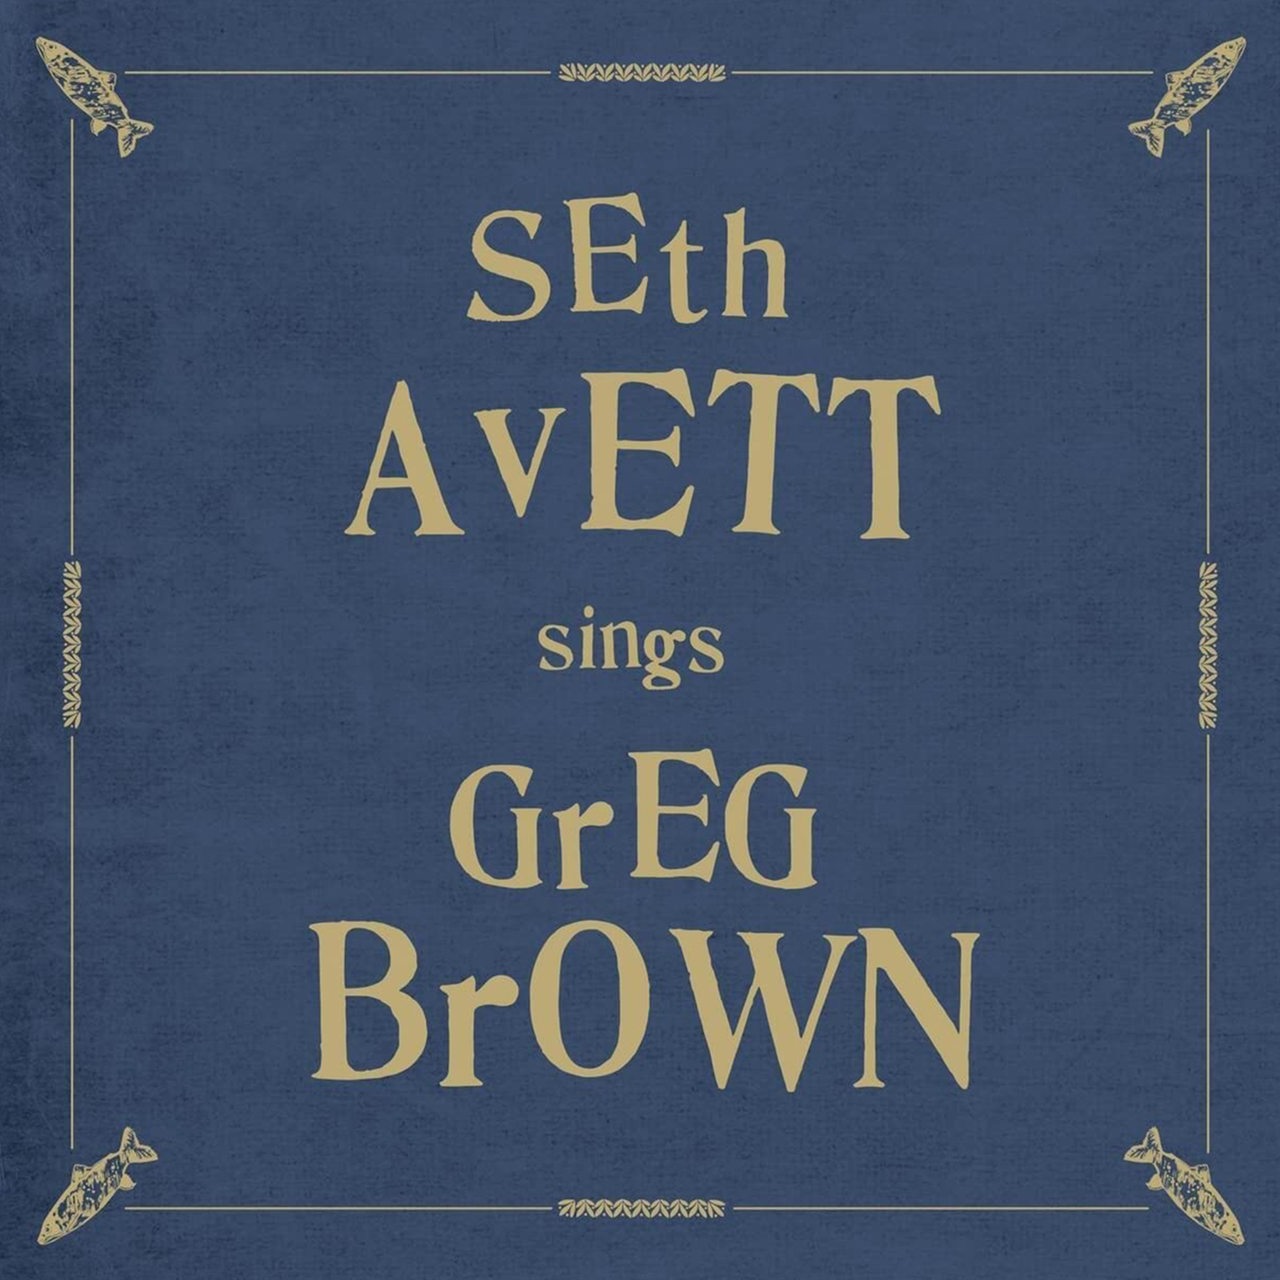 CD Tipps Seth Avett sings Greg Brown